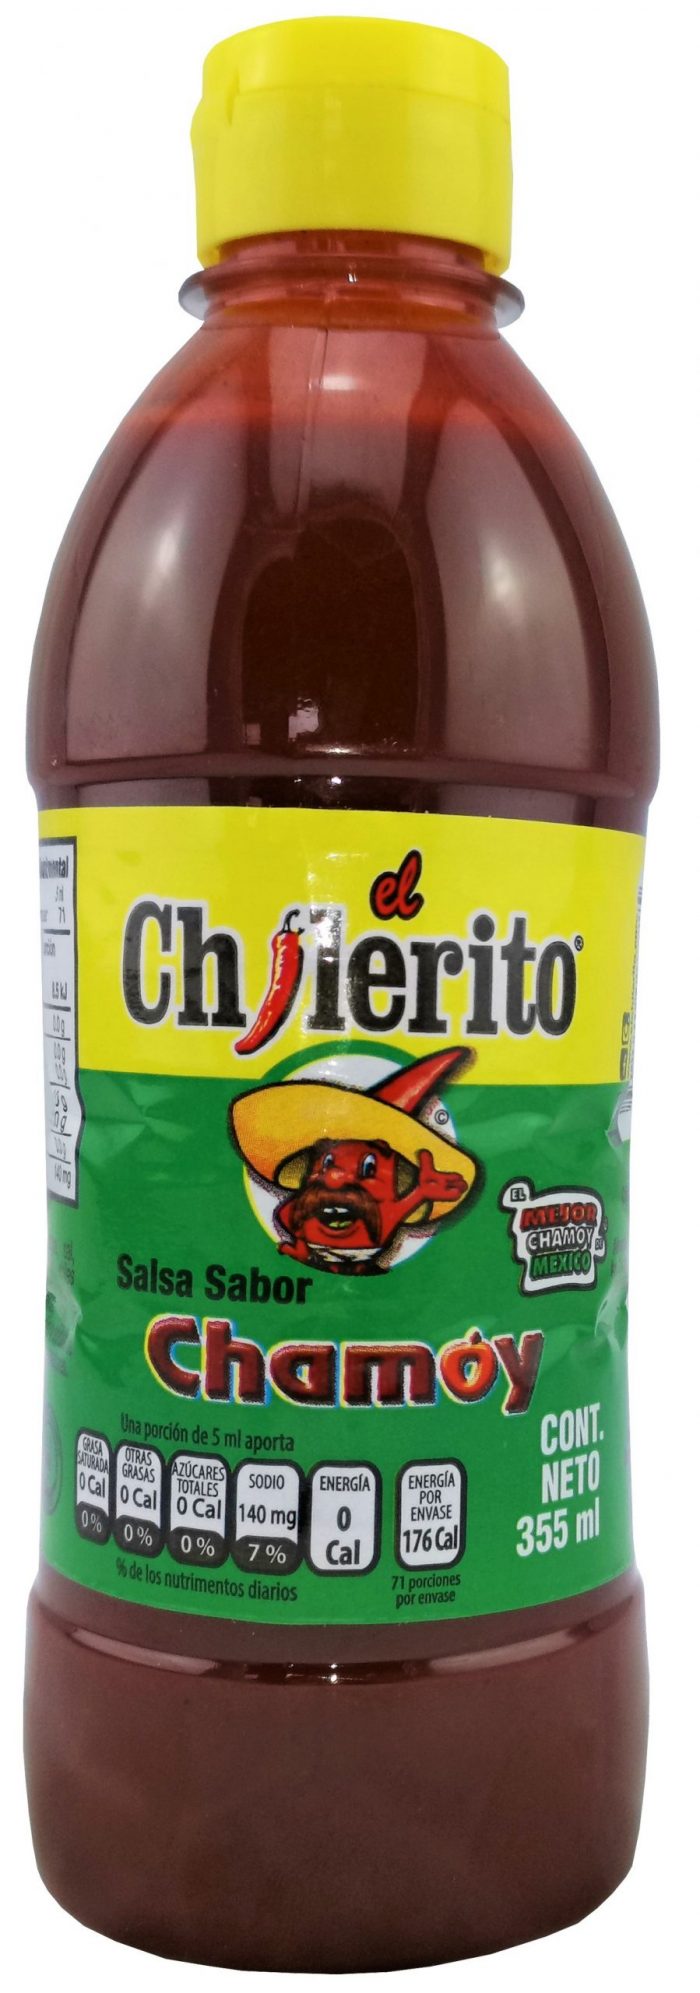 würzige Salsa aus Mexiko von Chilerito